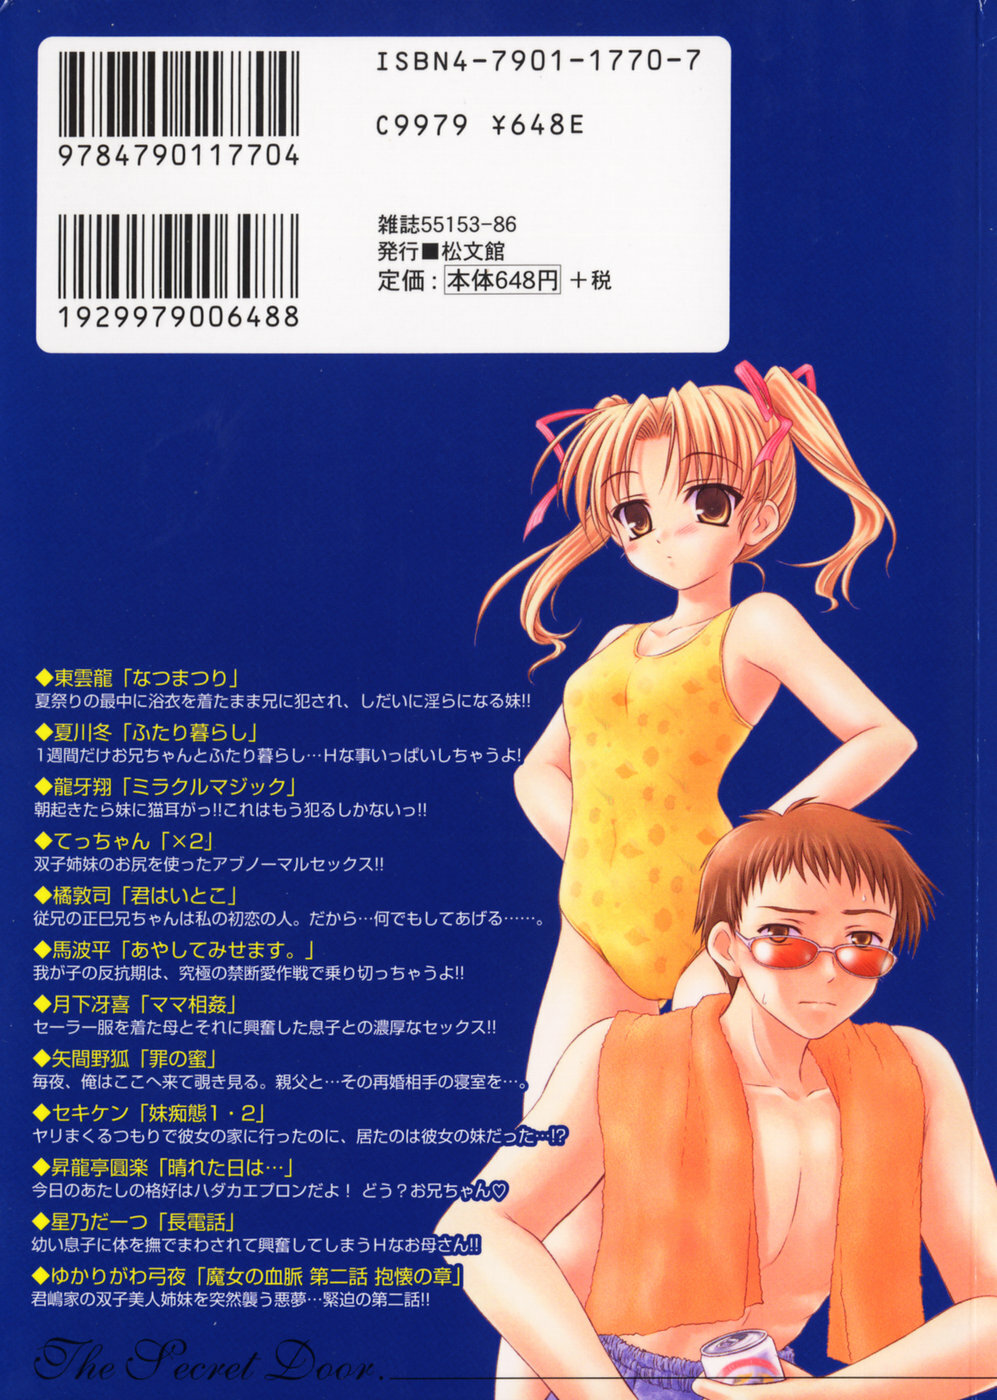 [Anthology] Himitsu no Tobira 5 Kinshin Ai Anthology (The Secret Door) page 214 full